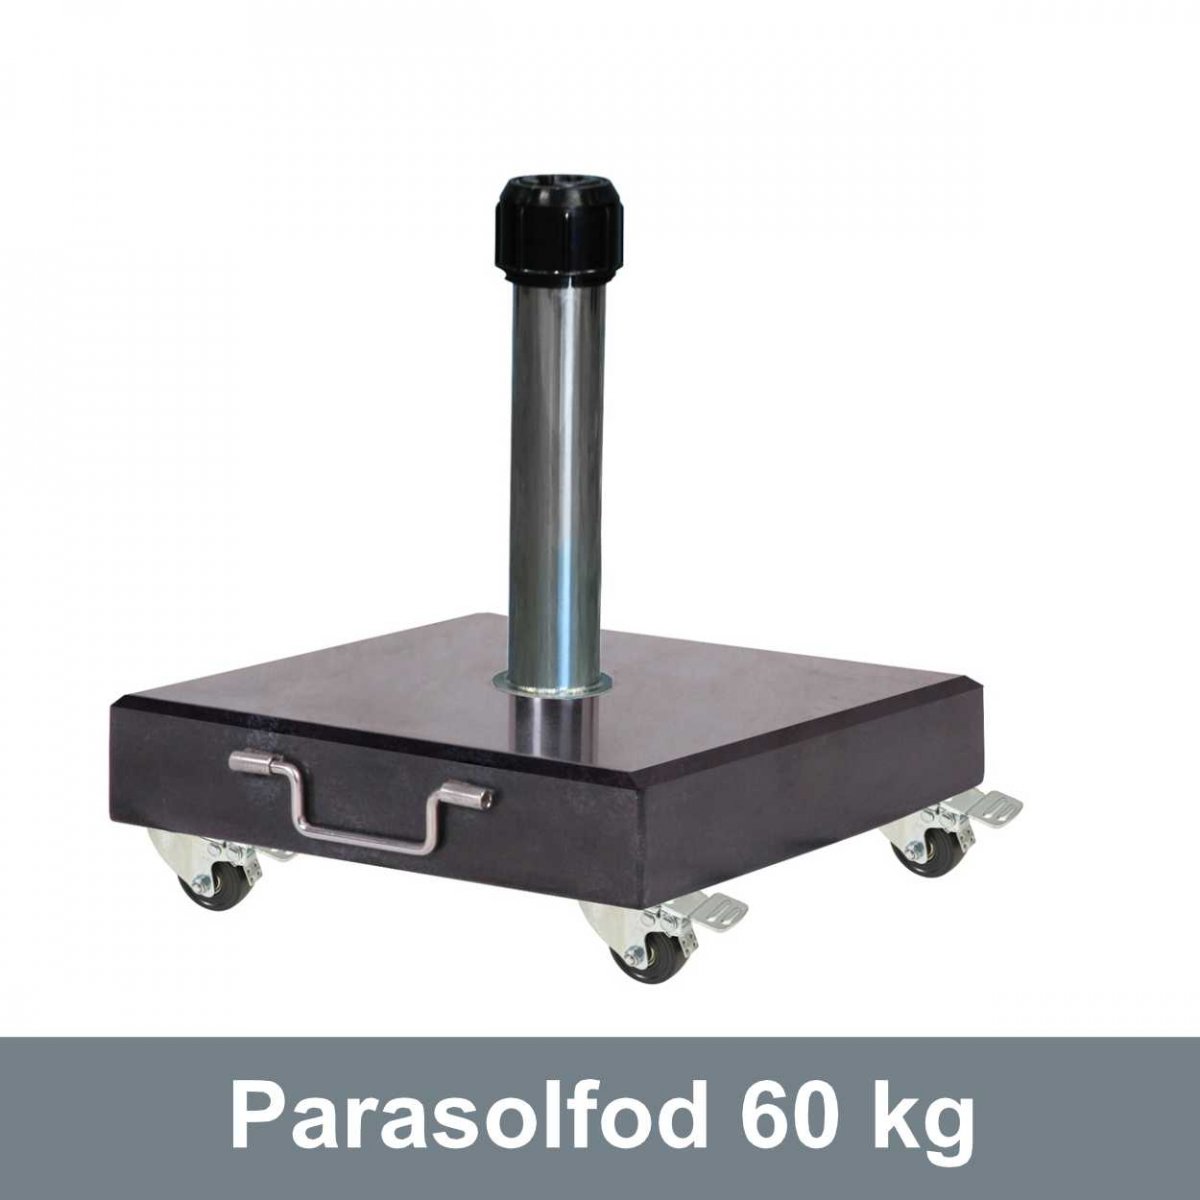 Parasolfod 60 kg - i granit på 60 kg